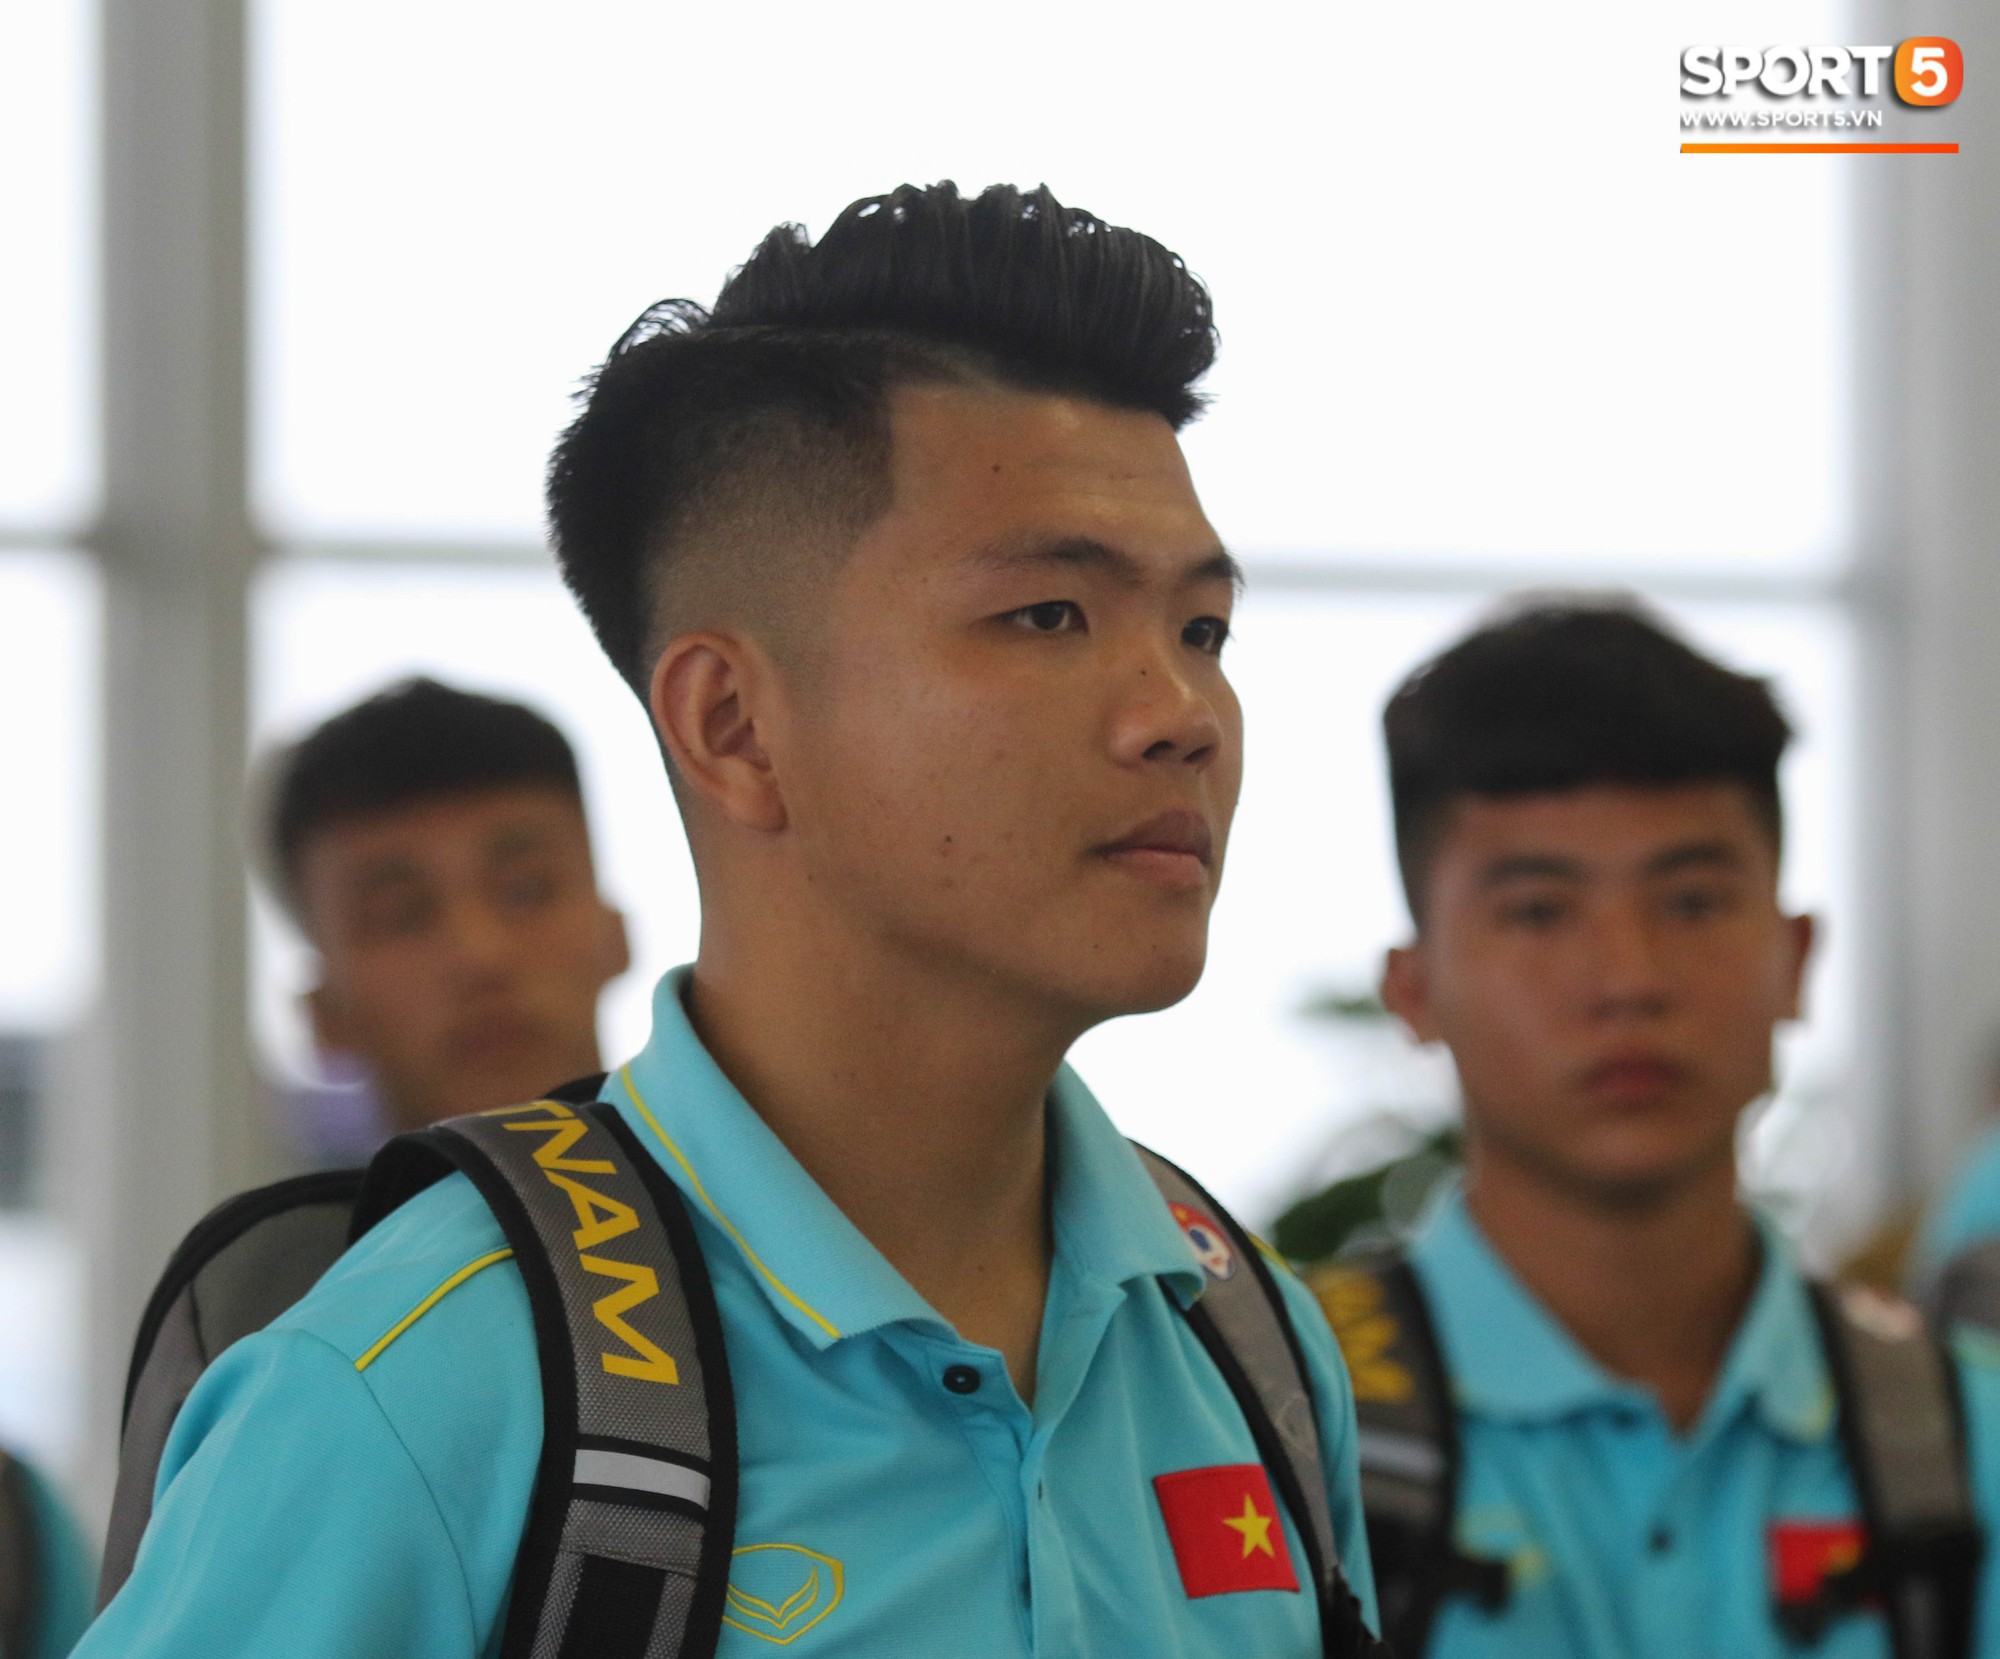 Dàn tuyển thủ U18 Việt Nam rủ nhau đảo ngói khá bảnh bao trước giờ lên đường tập huấn tại Nhật Bản - Ảnh 4.